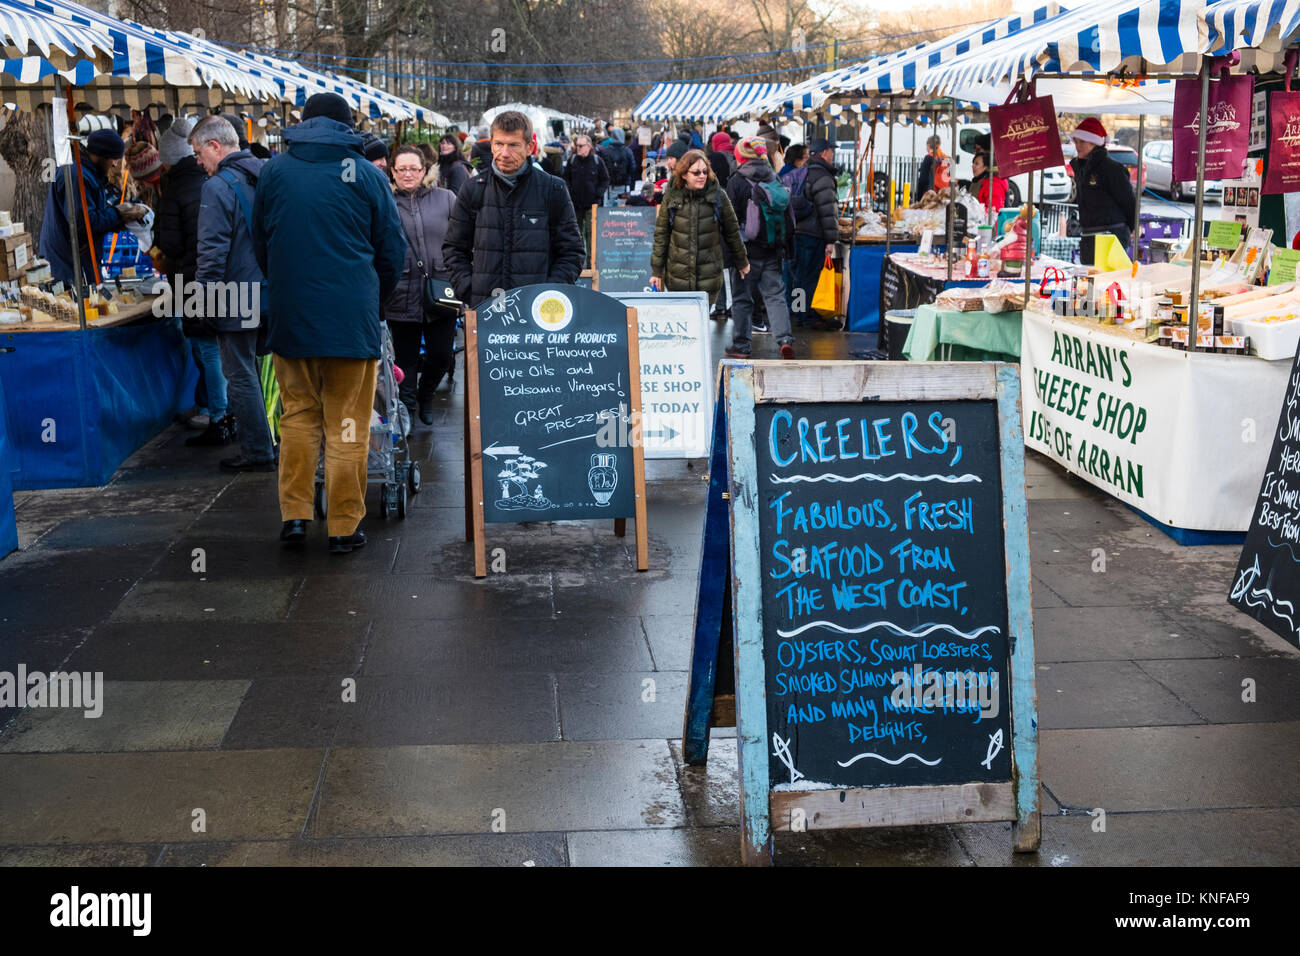 Les agriculteurs de plein air week-end's market qui a lieu au pied du Château d'Edimbourg en Ecosse, Edinburgh , Royaume-Uni Banque D'Images